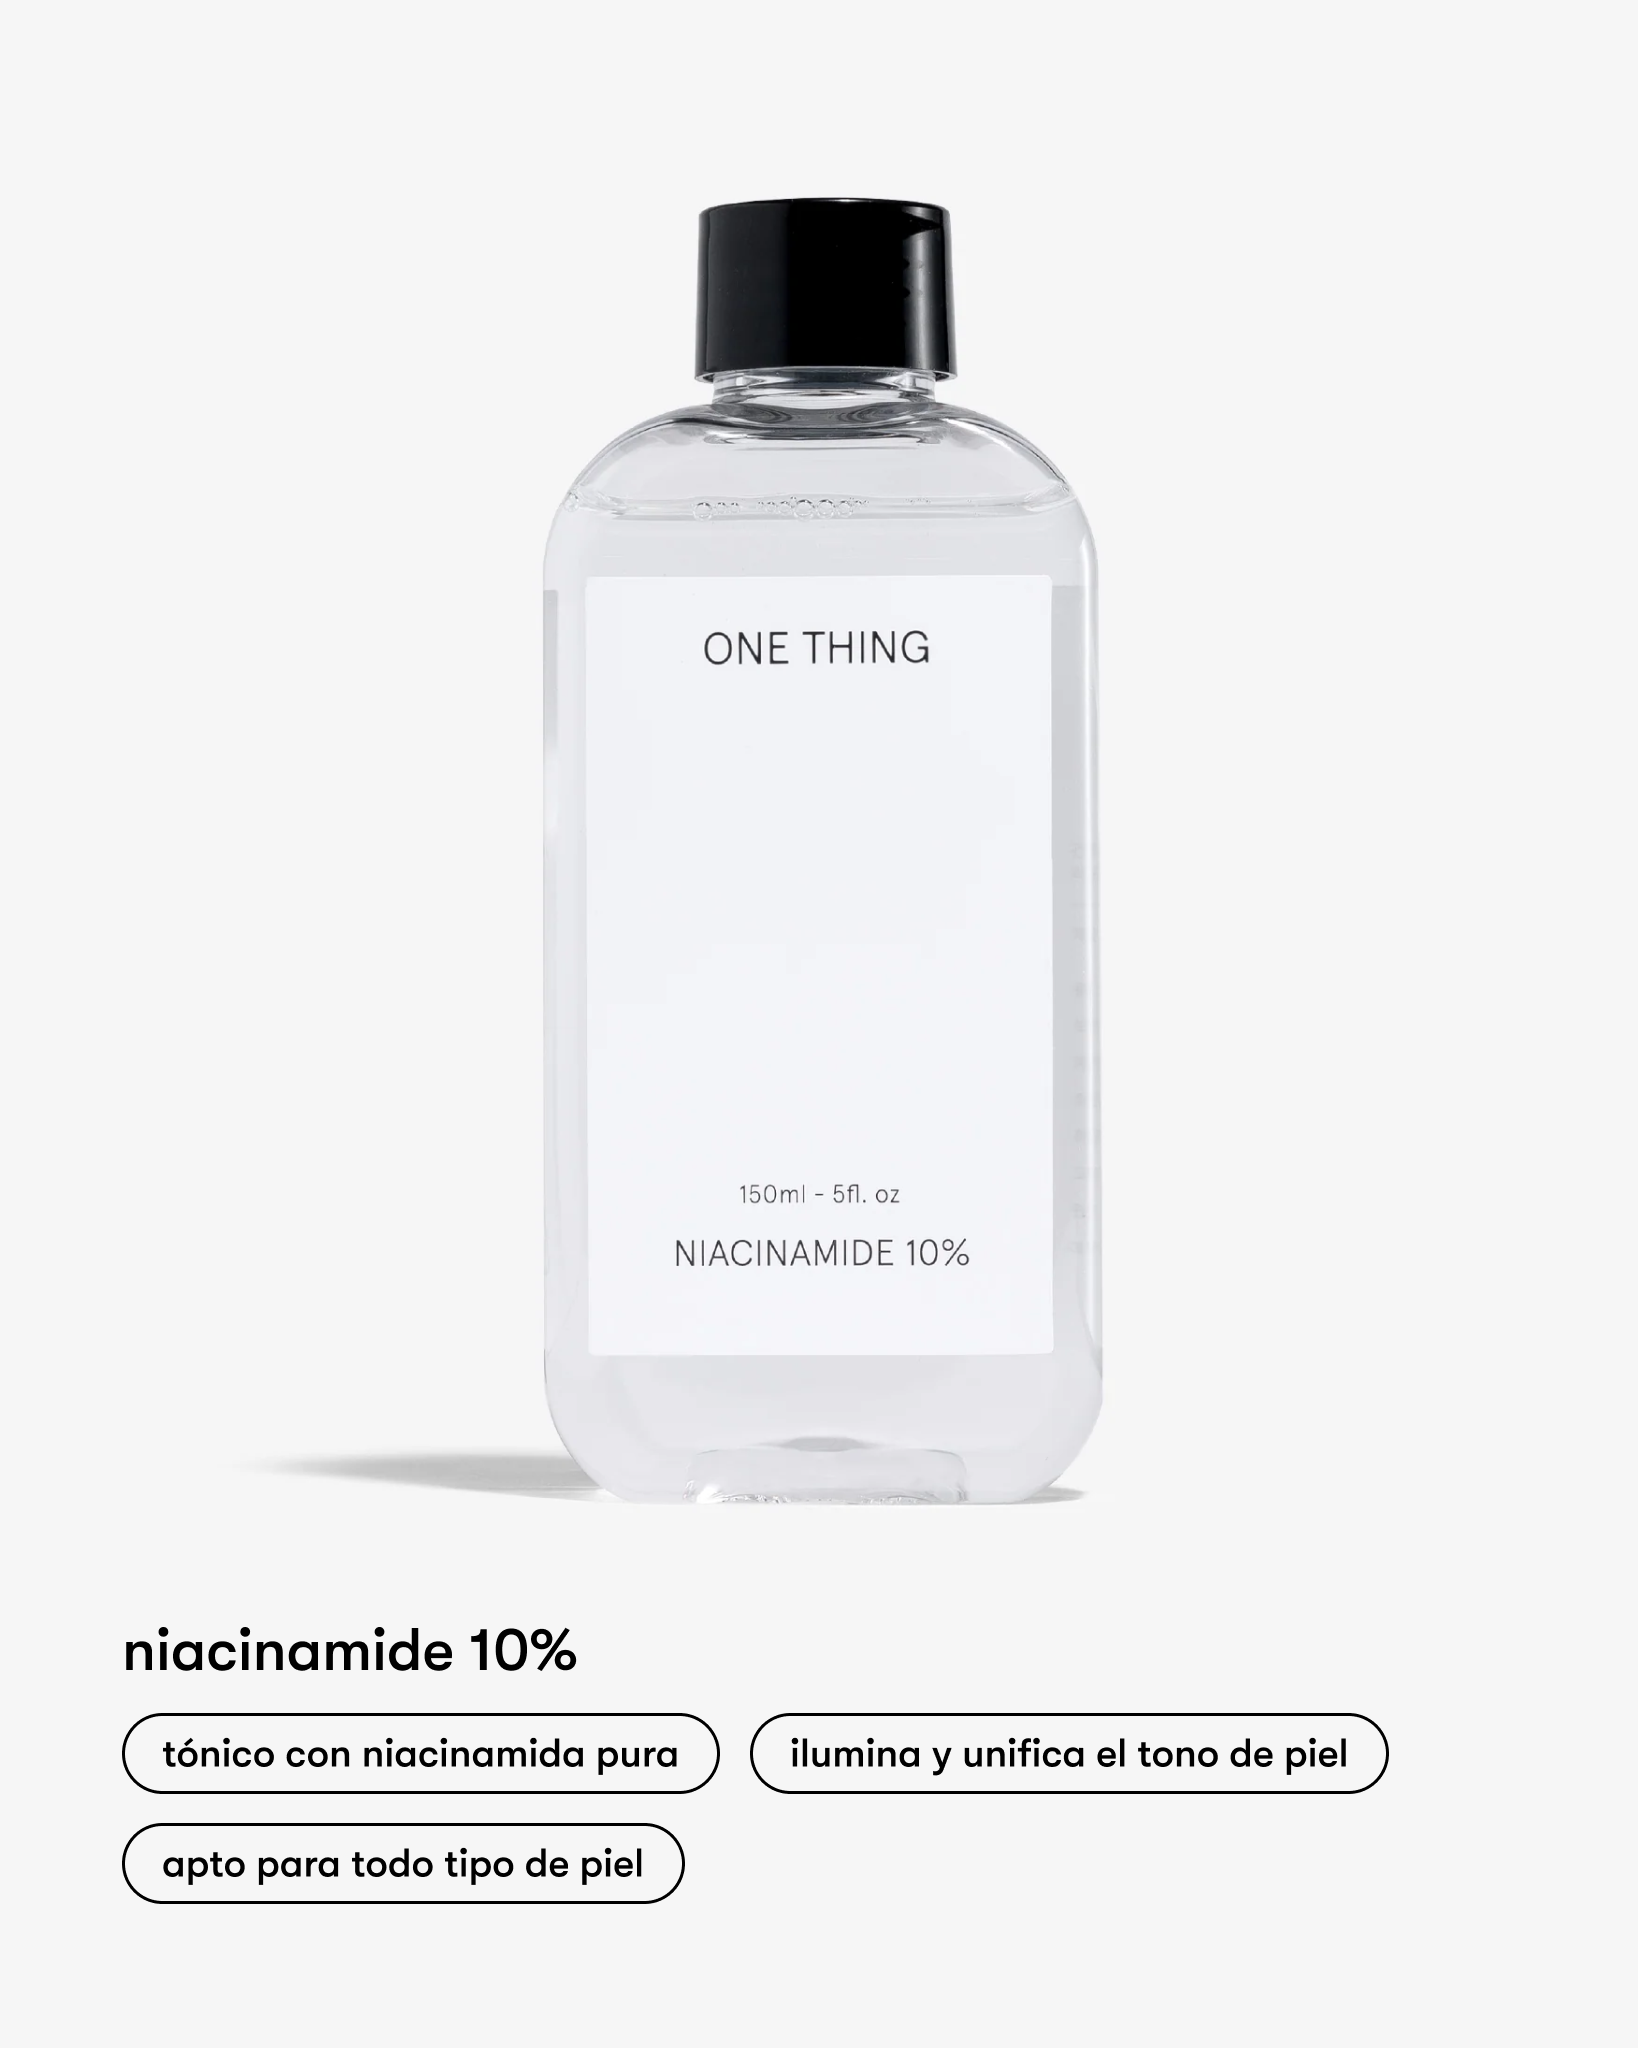 Niacinamide 10% (Tónico niacinamida)